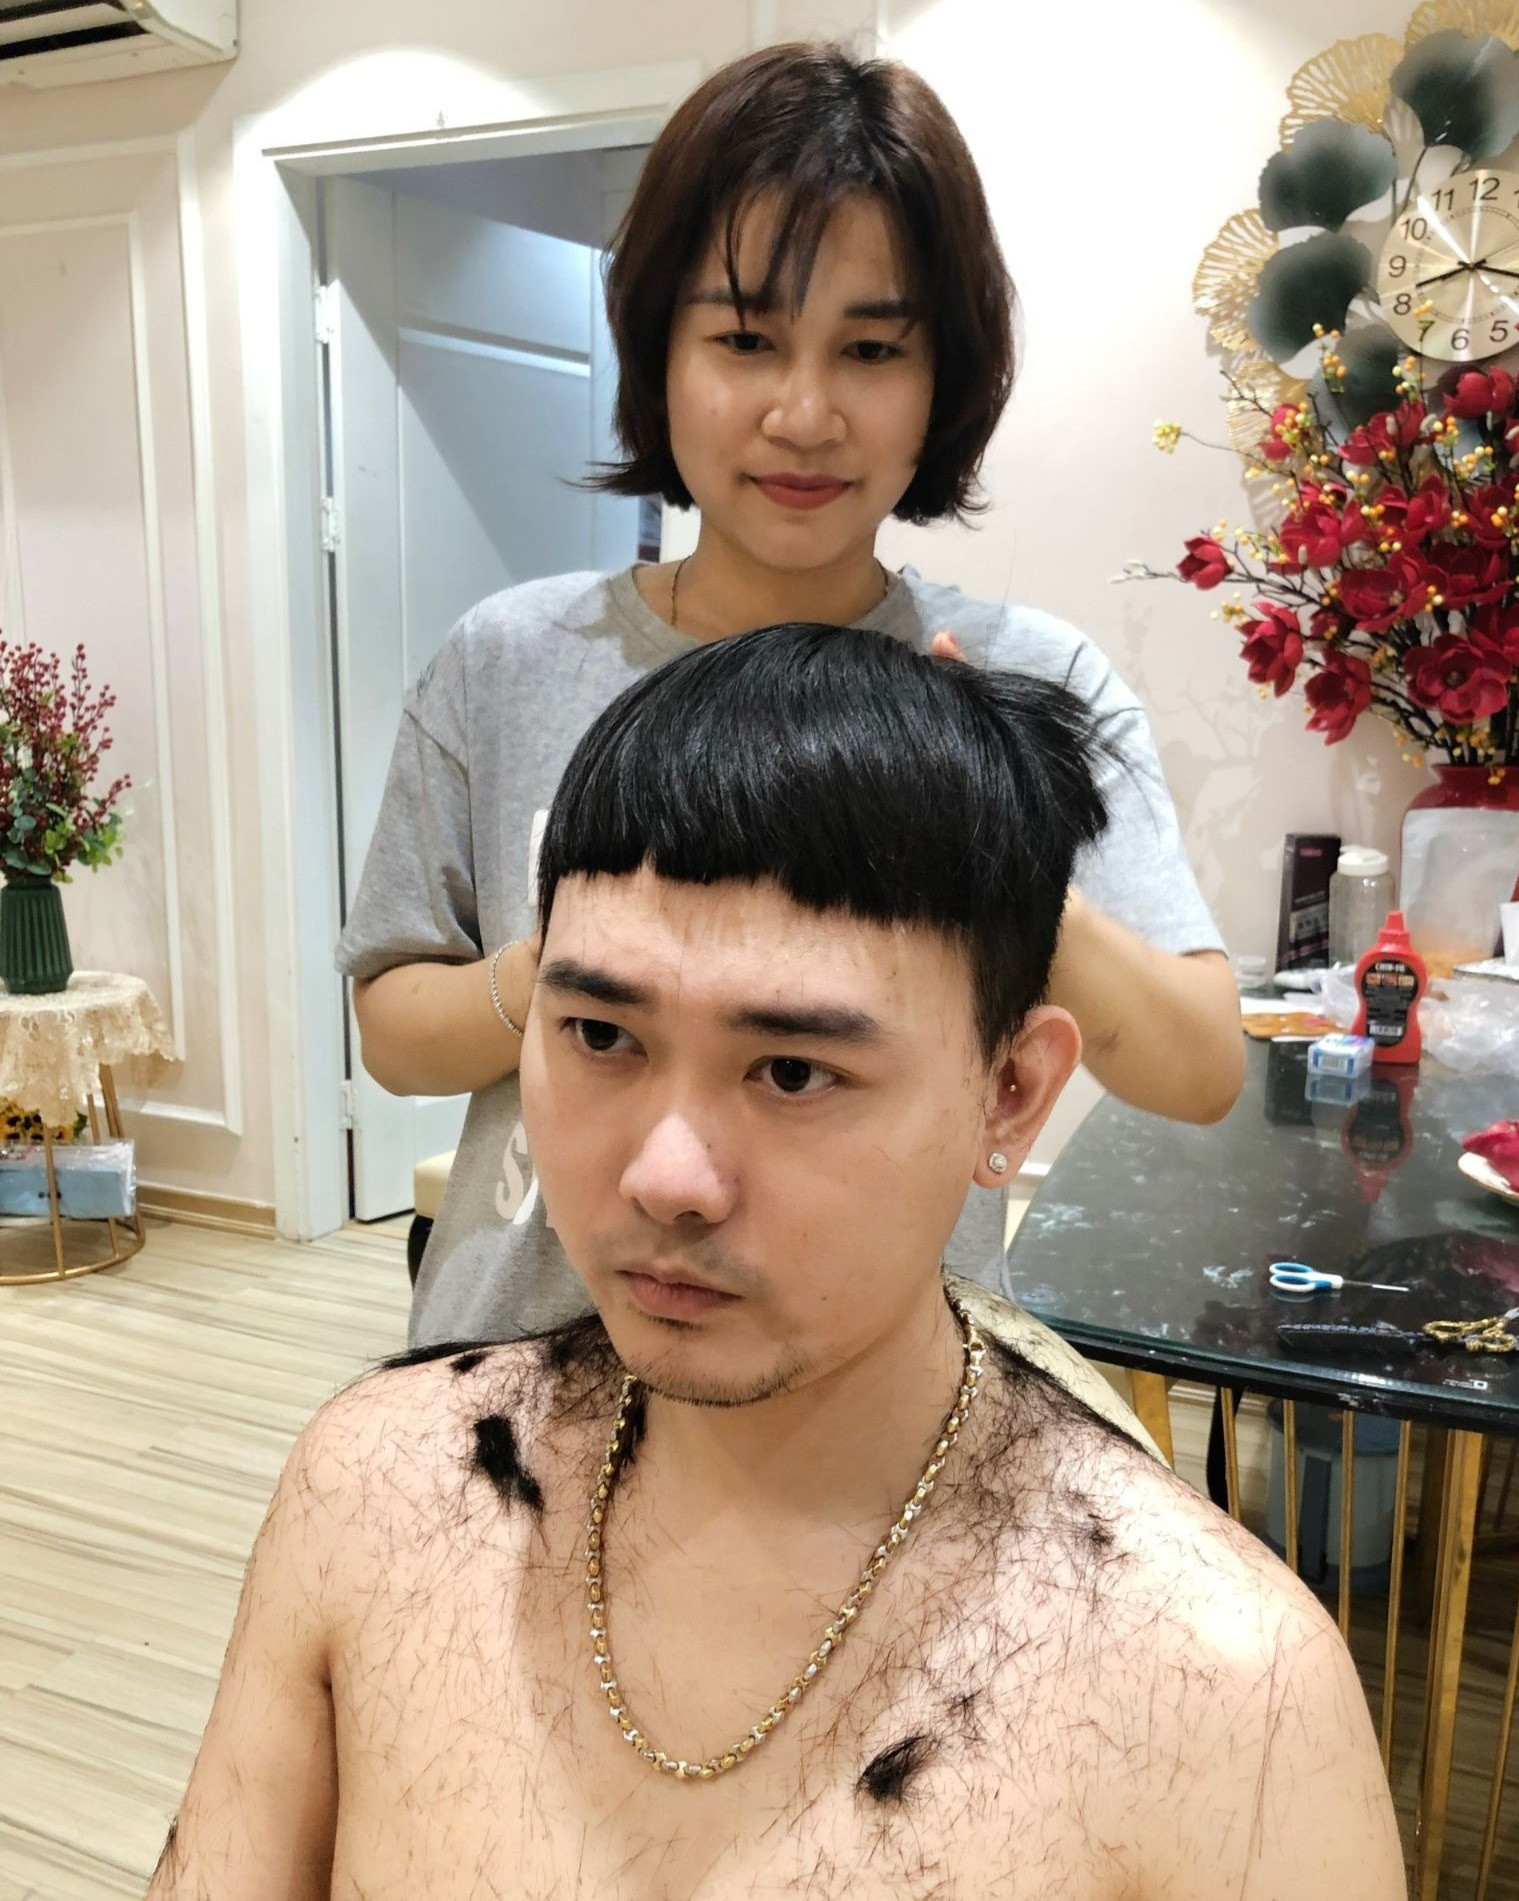 Chết cười khi vợ trẻ trở thành thợ cắt tóc bất đắc dĩ cho chồng - 1